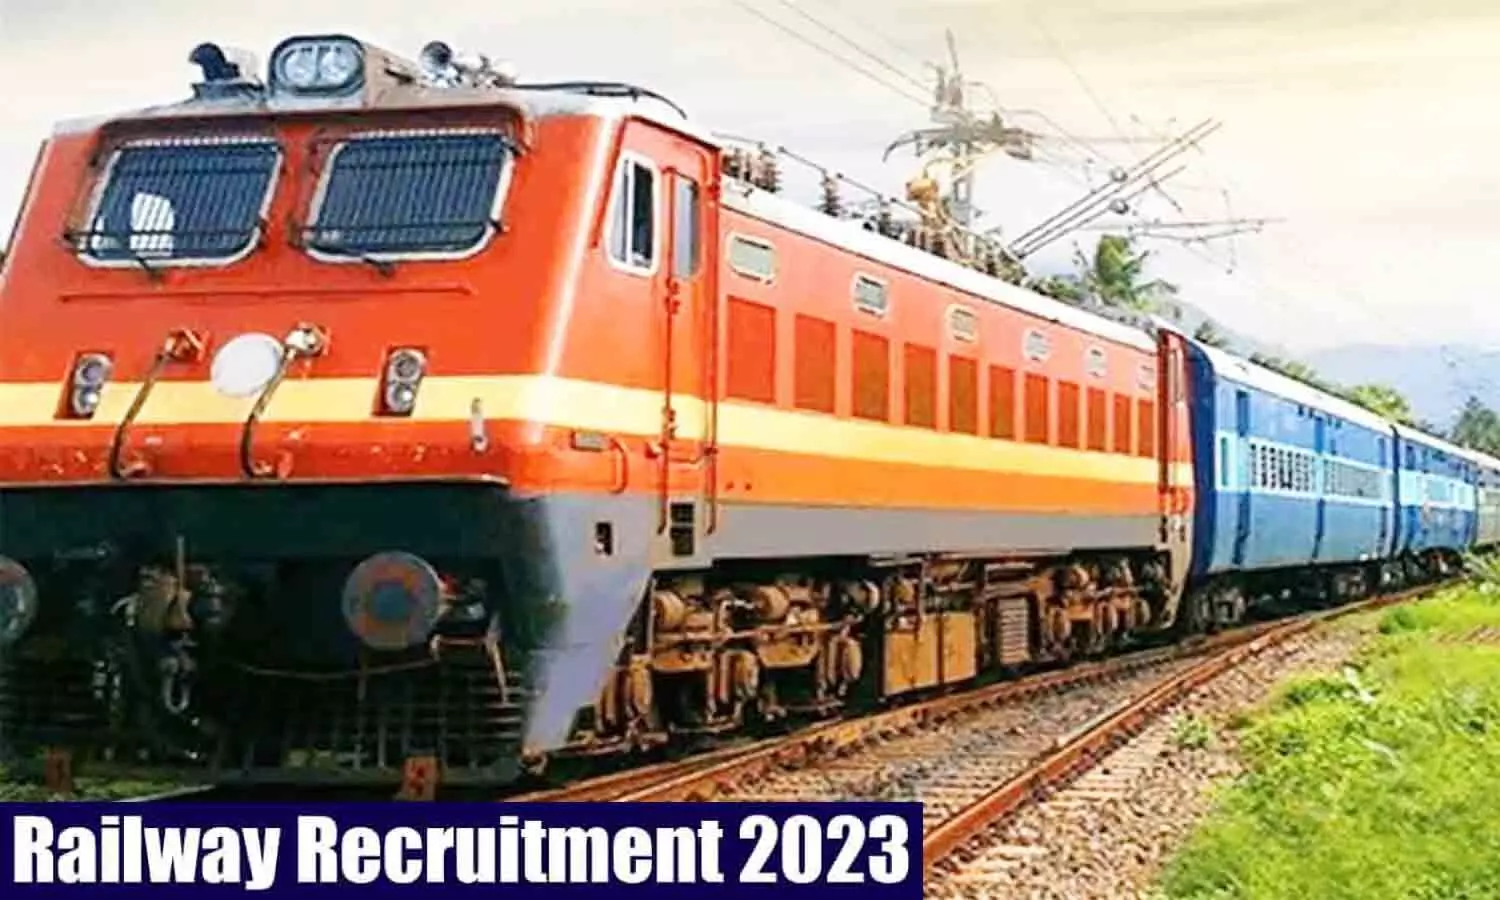 Railway Recruitment 2023: रेलवे में असिस्टेंट लोको पायलट सहित अन्य पदों के लिए निकली वैकेंसी, यह होनी चाहिए क्वालिफिकेशन व एज लिमिट